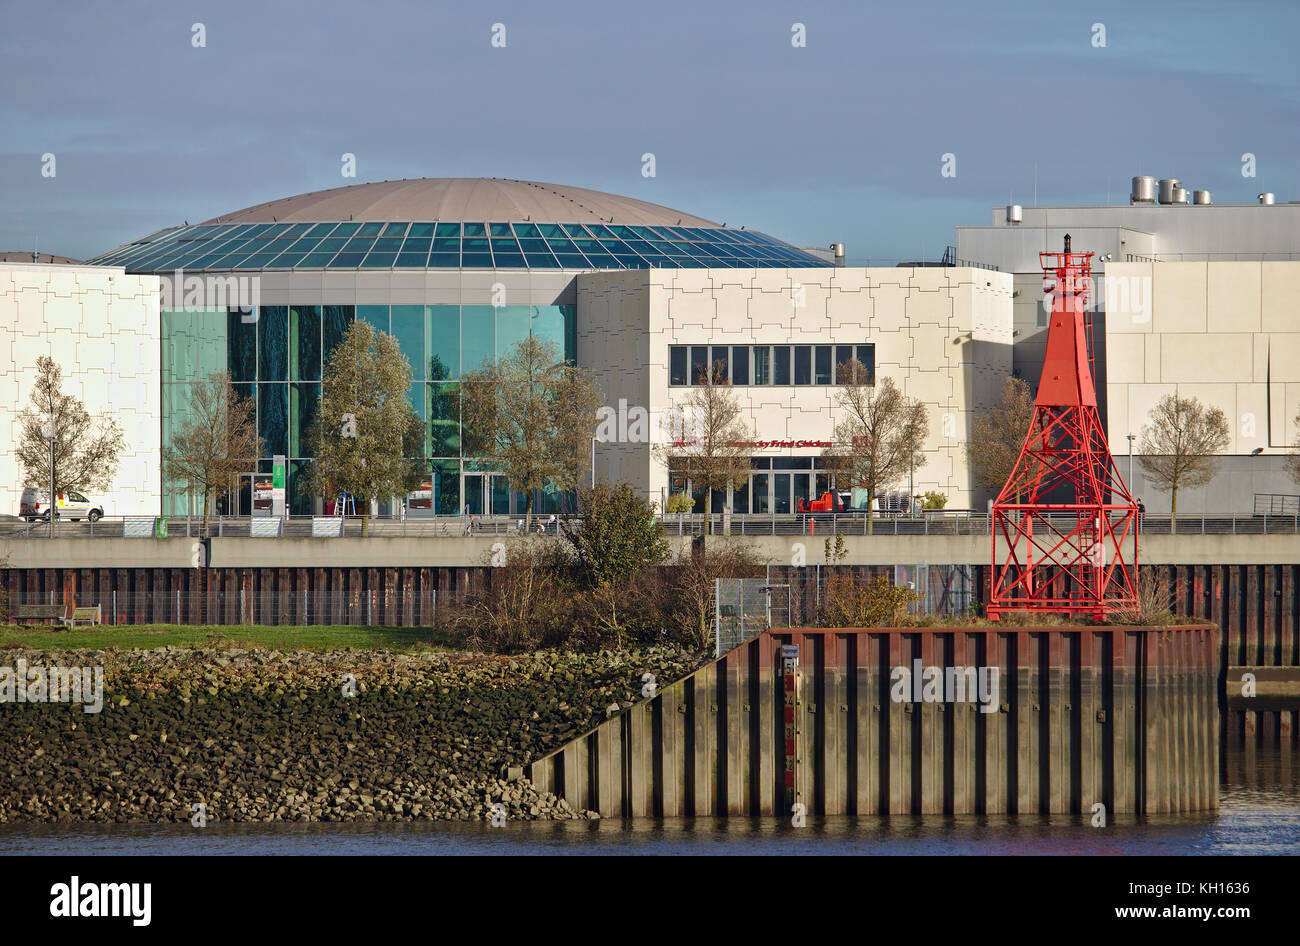 Brema, Germania - 6 novembre 2017 - cupola di vetro del centro commerciale Waterfront (ex Space Park) con il fiume Weser, il contrassegno rosso del mare e il foglio di pil Foto Stock